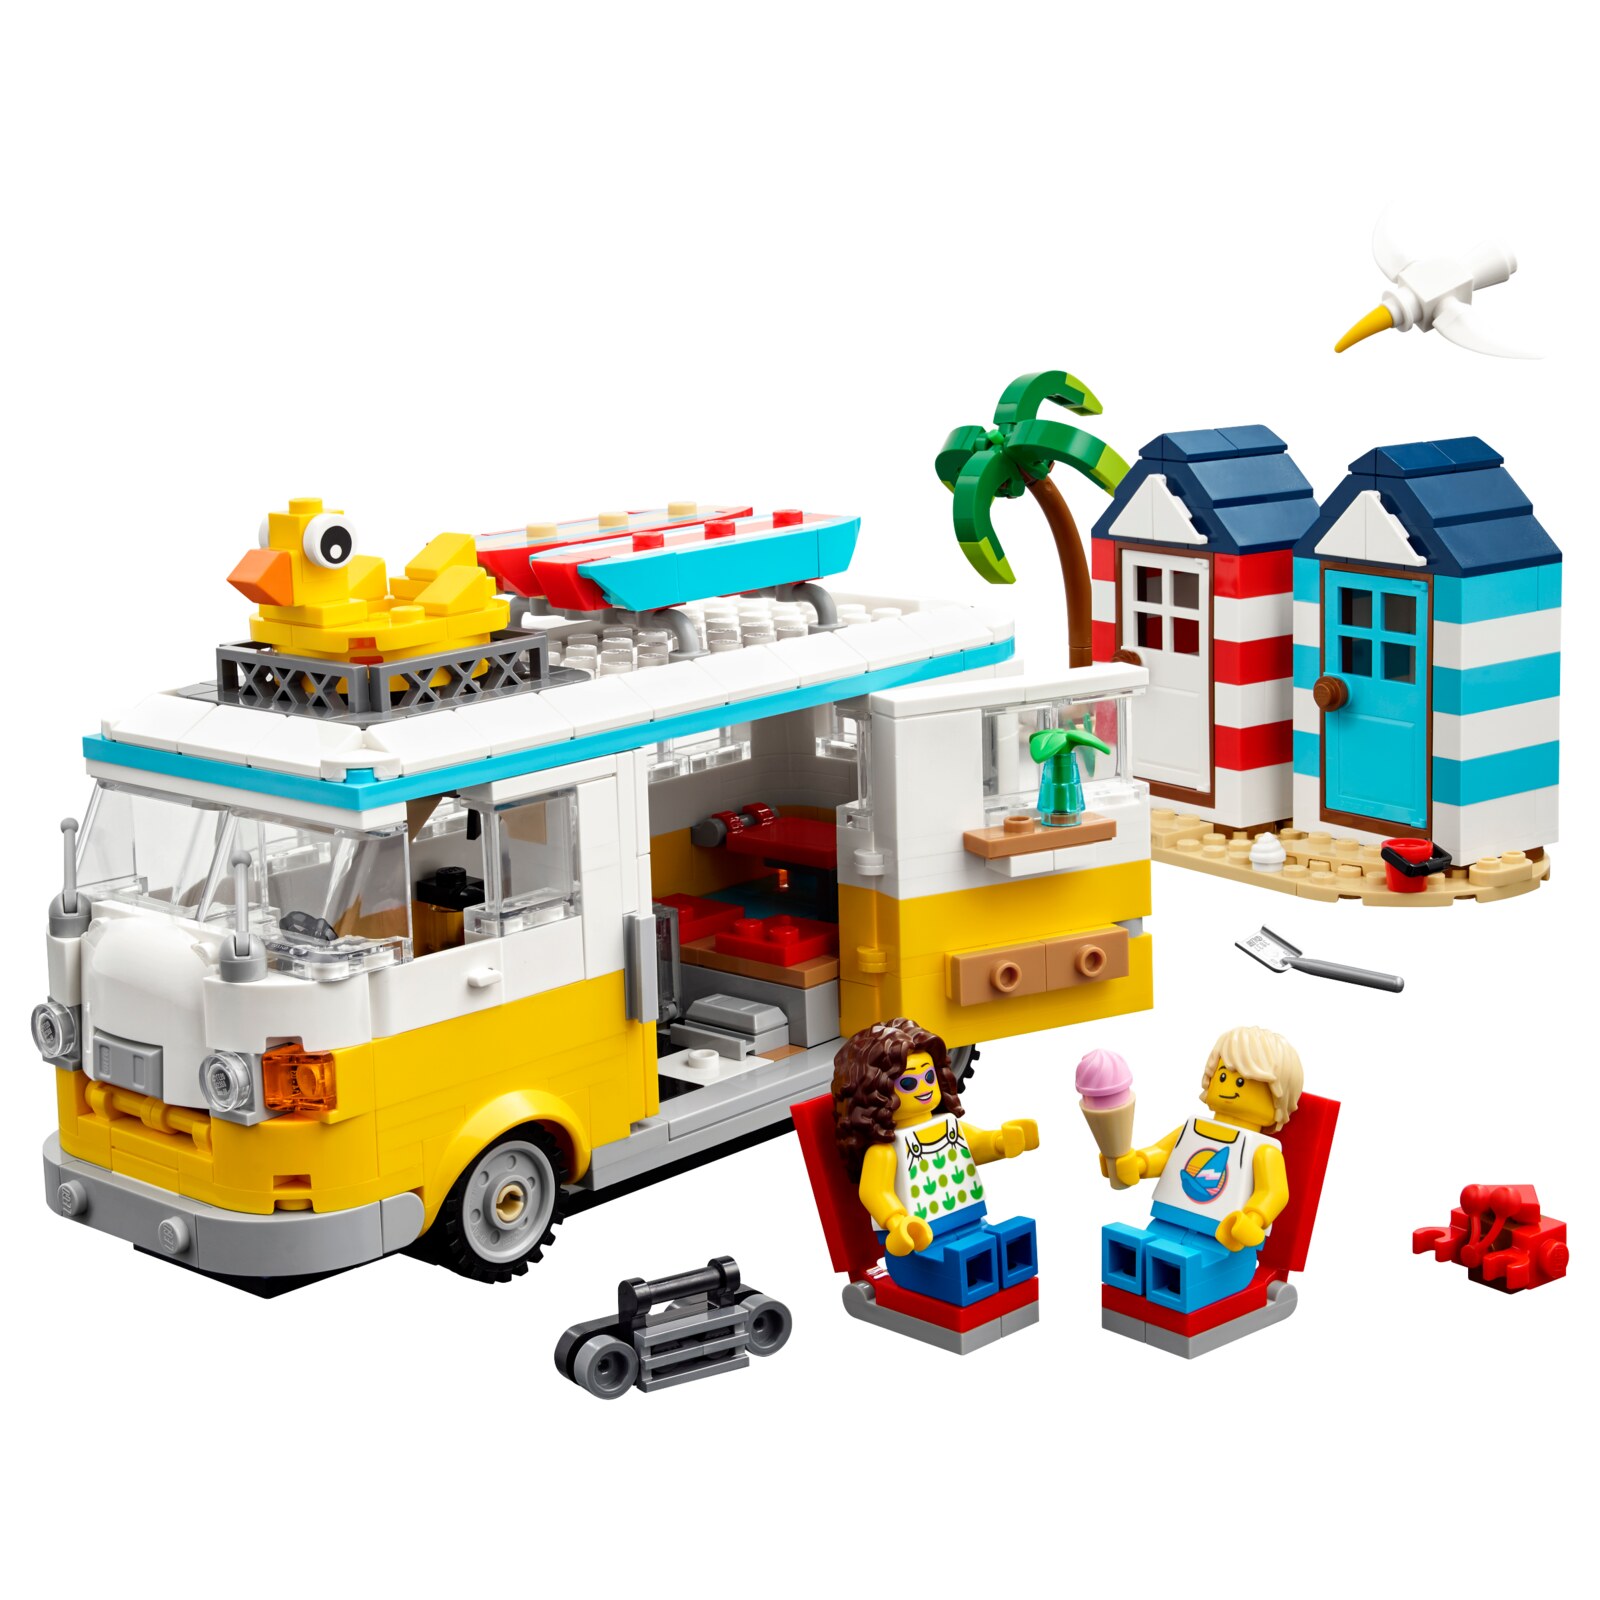 Конструктор LEGO ЛЕГО Creator 31138 Пляжный кемпер 3 в 1 конструктор lego hidden side 70428 пляжный багги джека